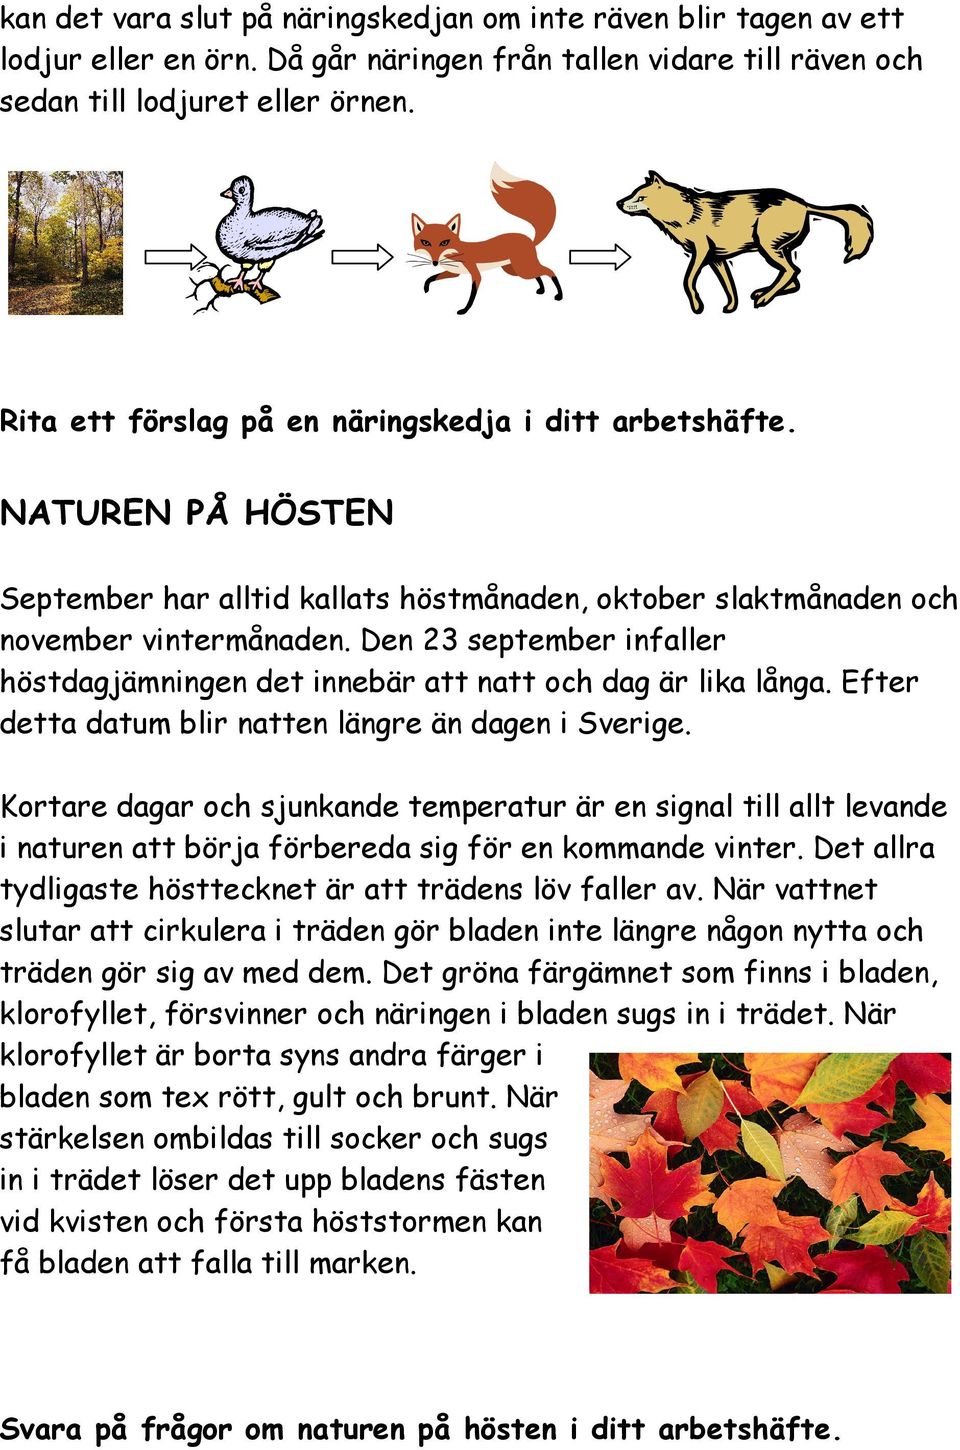 Den 23 september infaller höstdagjämningen det innebär att natt och dag är lika långa. Efter detta datum blir natten längre än dagen i Sverige.